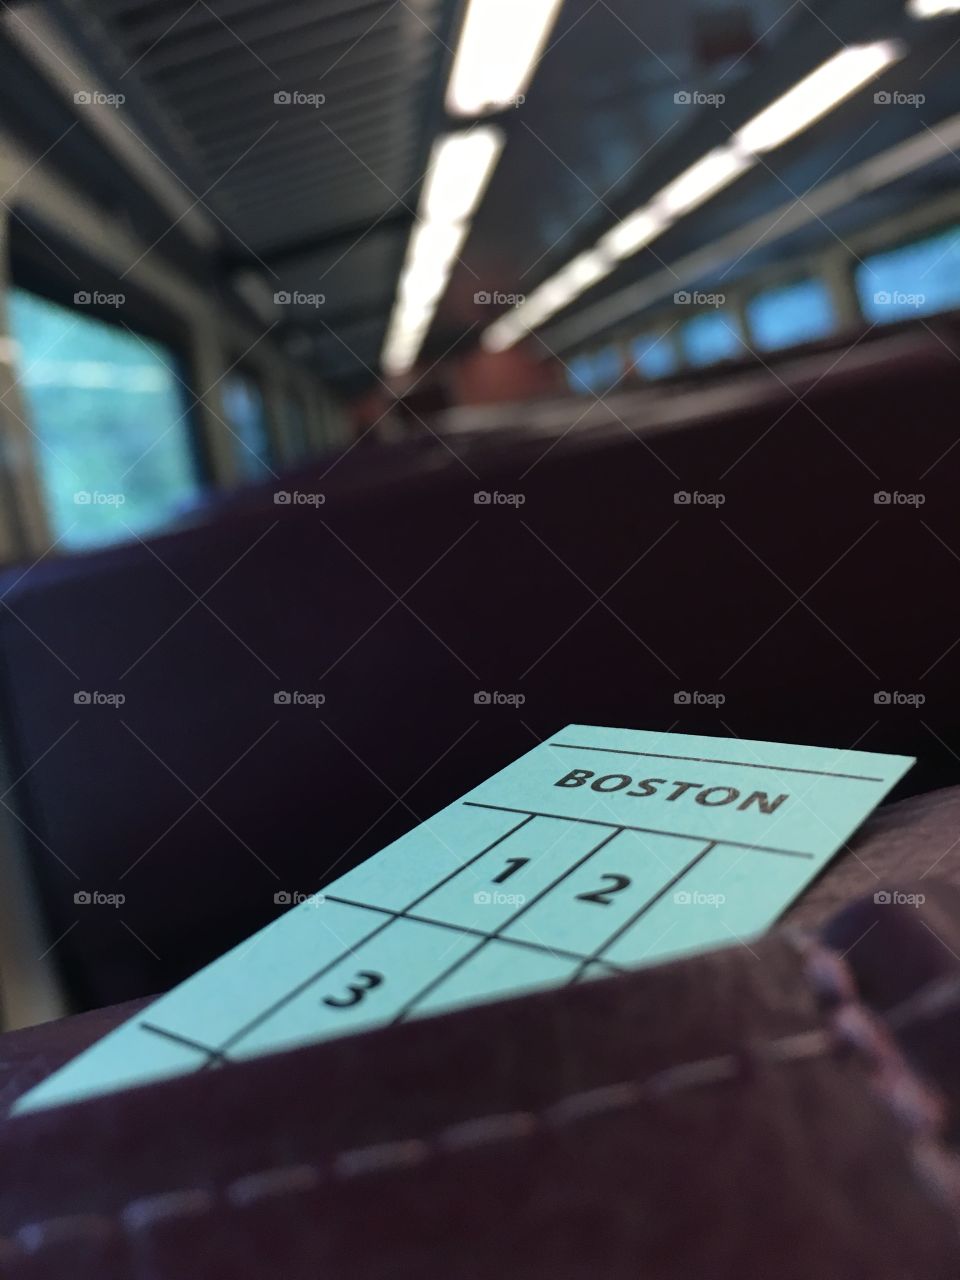 MBTA to Boston 
